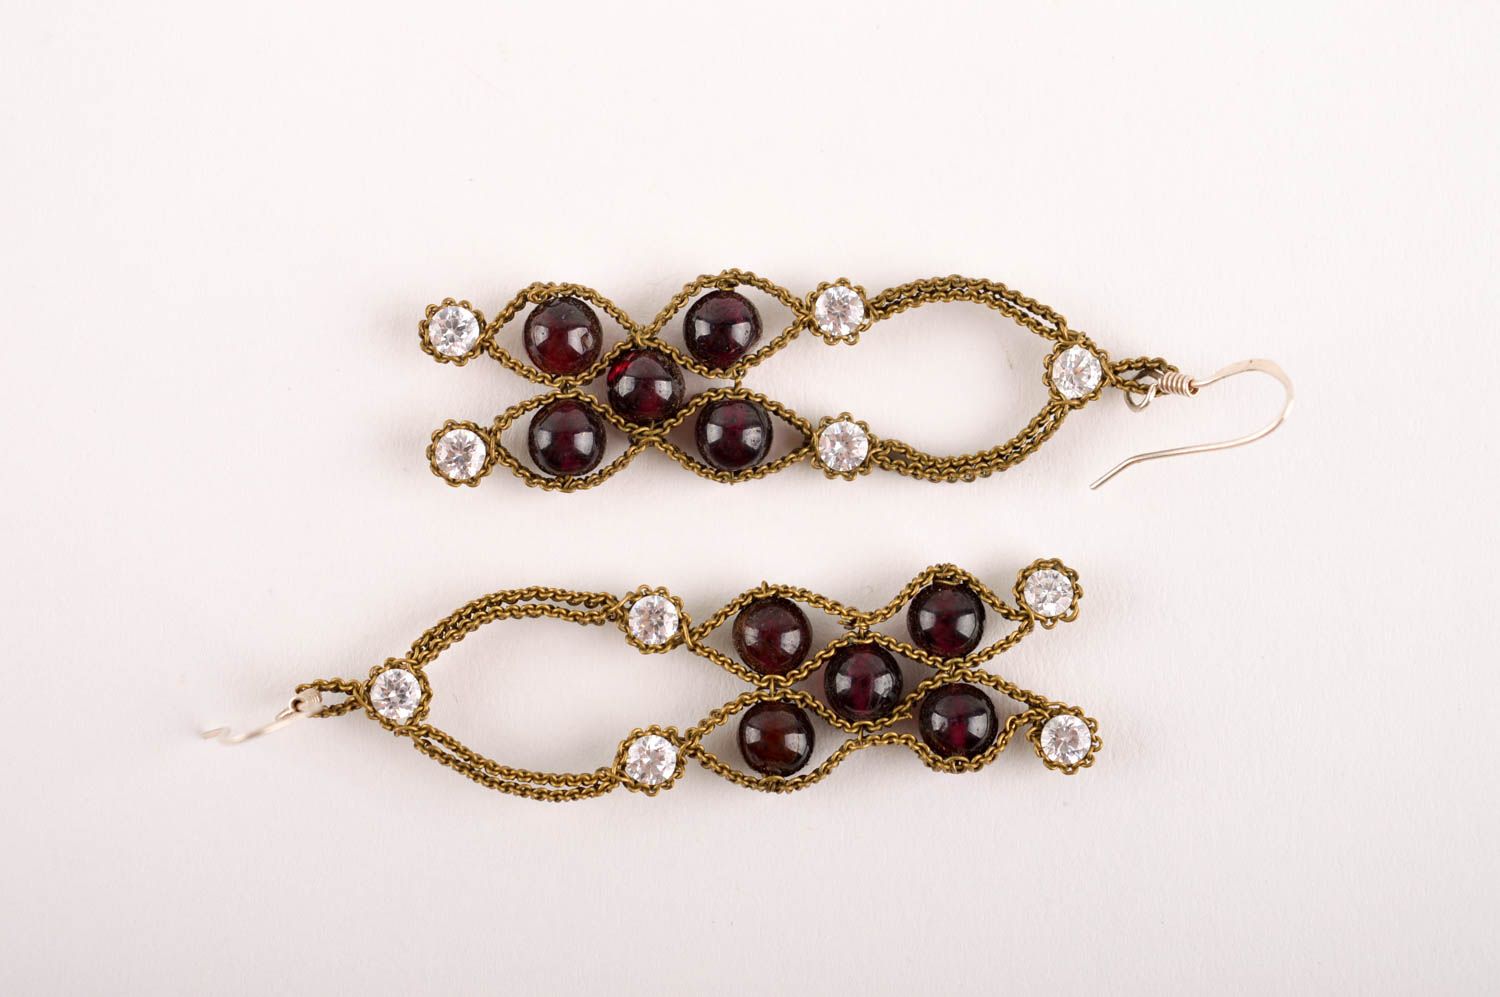 Beautiful handmade metal earrings gemstone earrings artisan jewelry designs photo 4